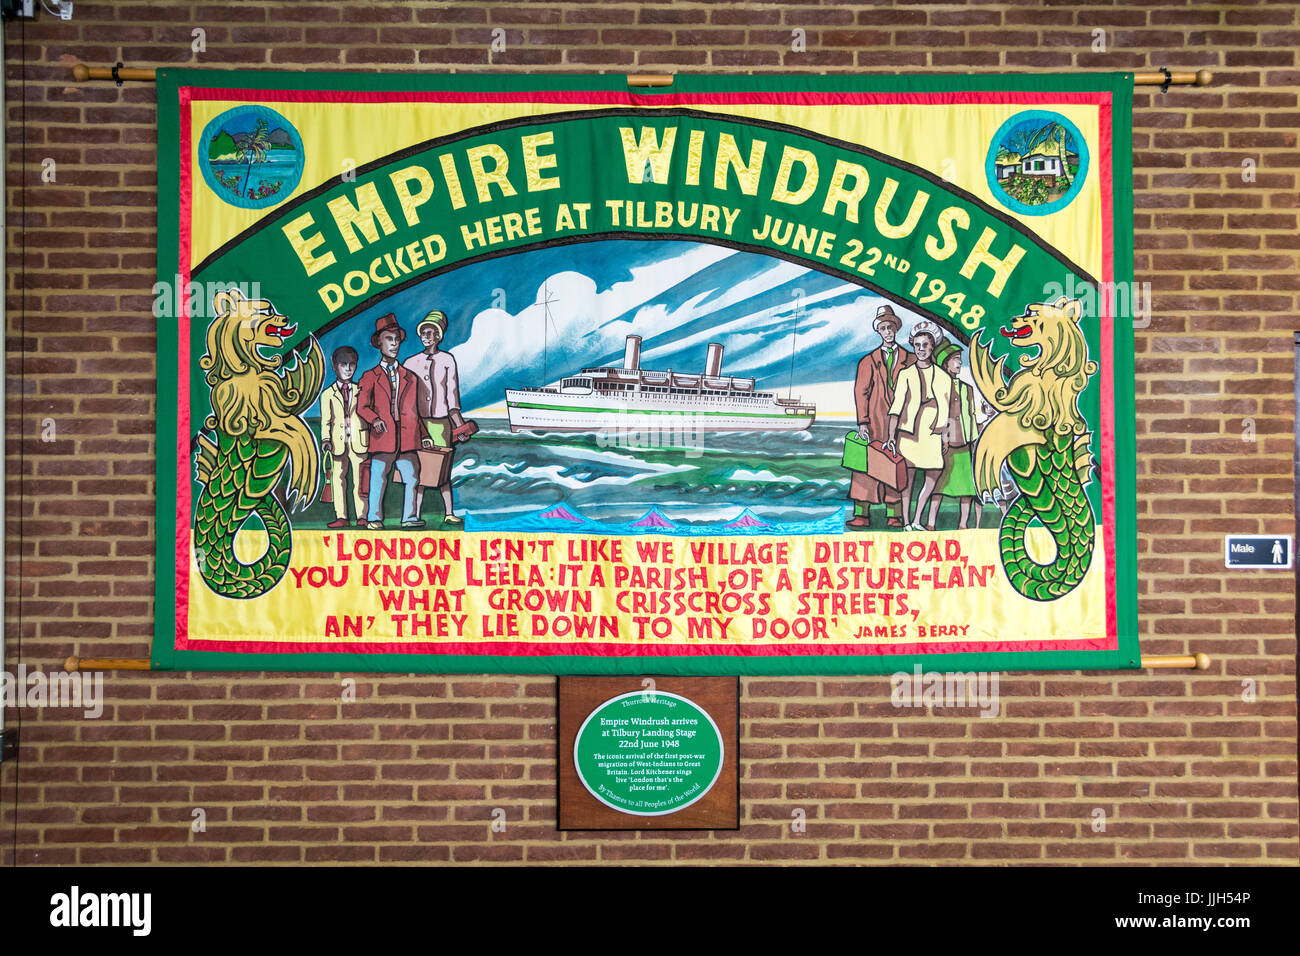 Un drapeau et une plaque commémoratifs Empire Windrush au terminal de croisière de Londres, Tilbury Docks, Tilbury, Essex, Angleterre, ROYAUME-UNI Banque D'Images